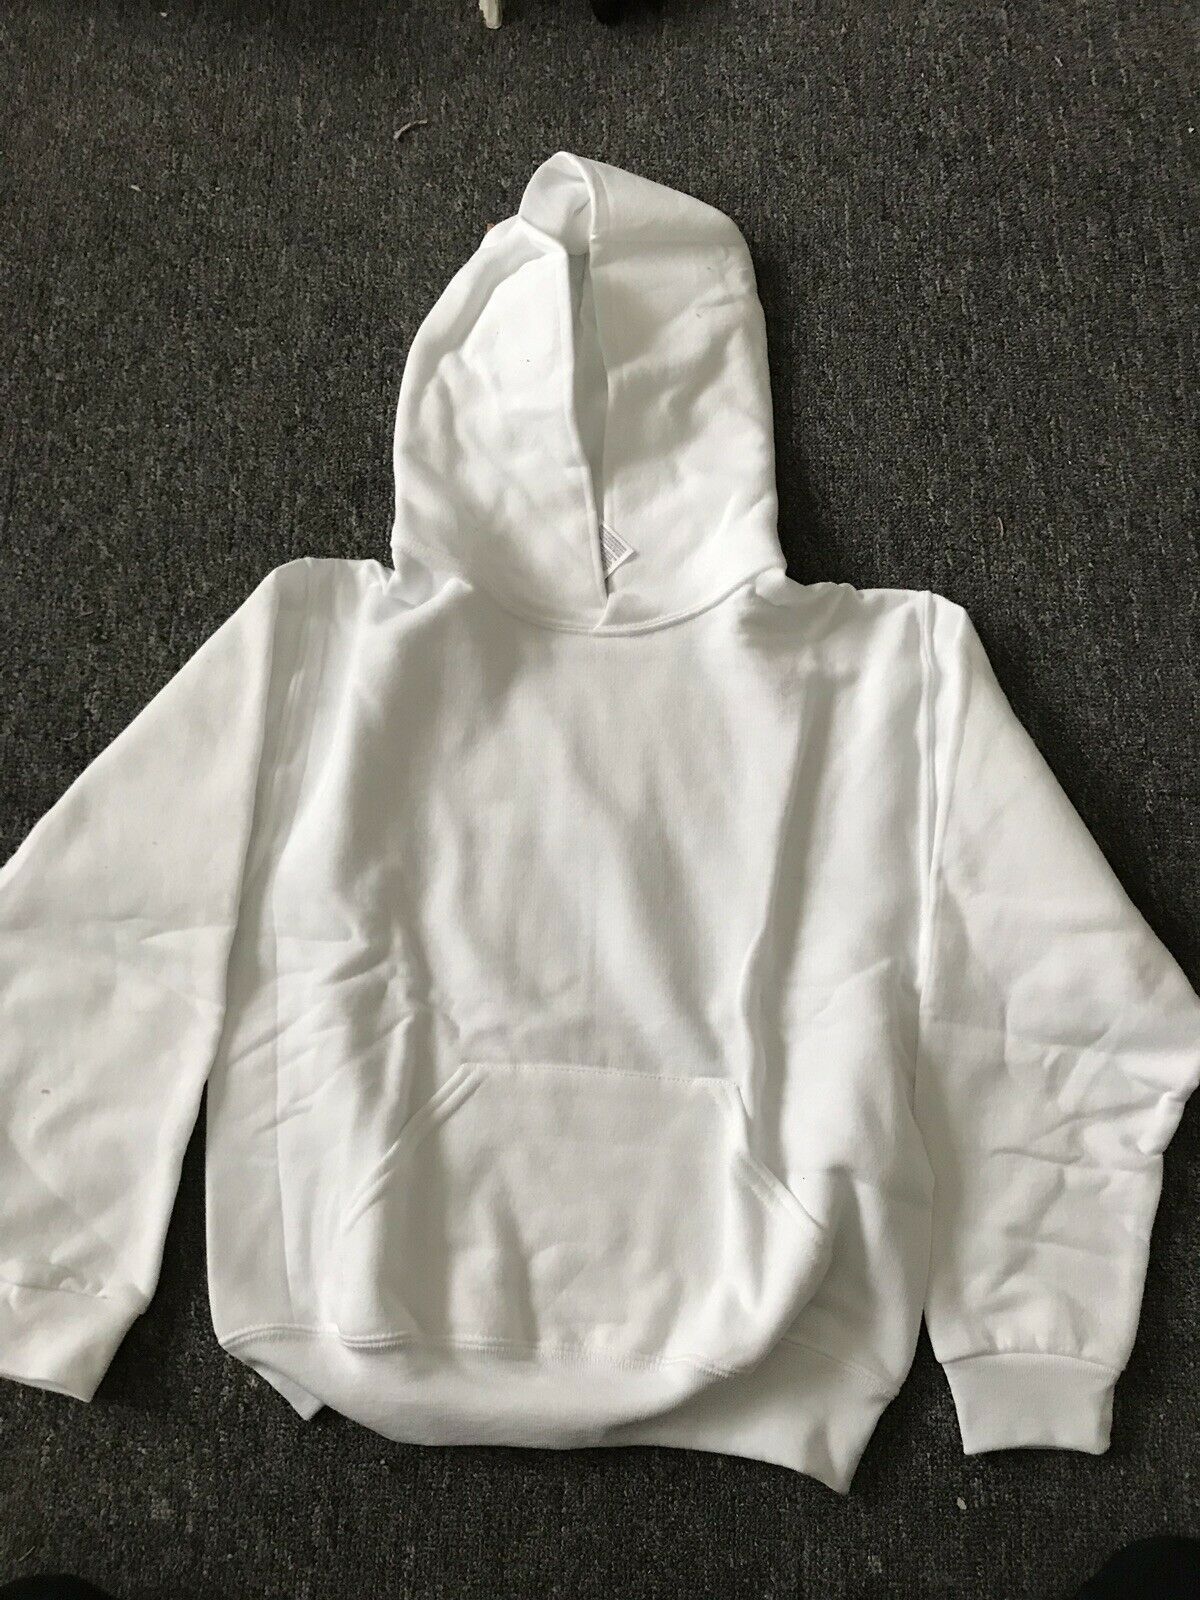 JERZEES NUBLEND~Hooded HOODIE Pullover Sweatshirt White Size M ~ NWOT Hoody - $11.95